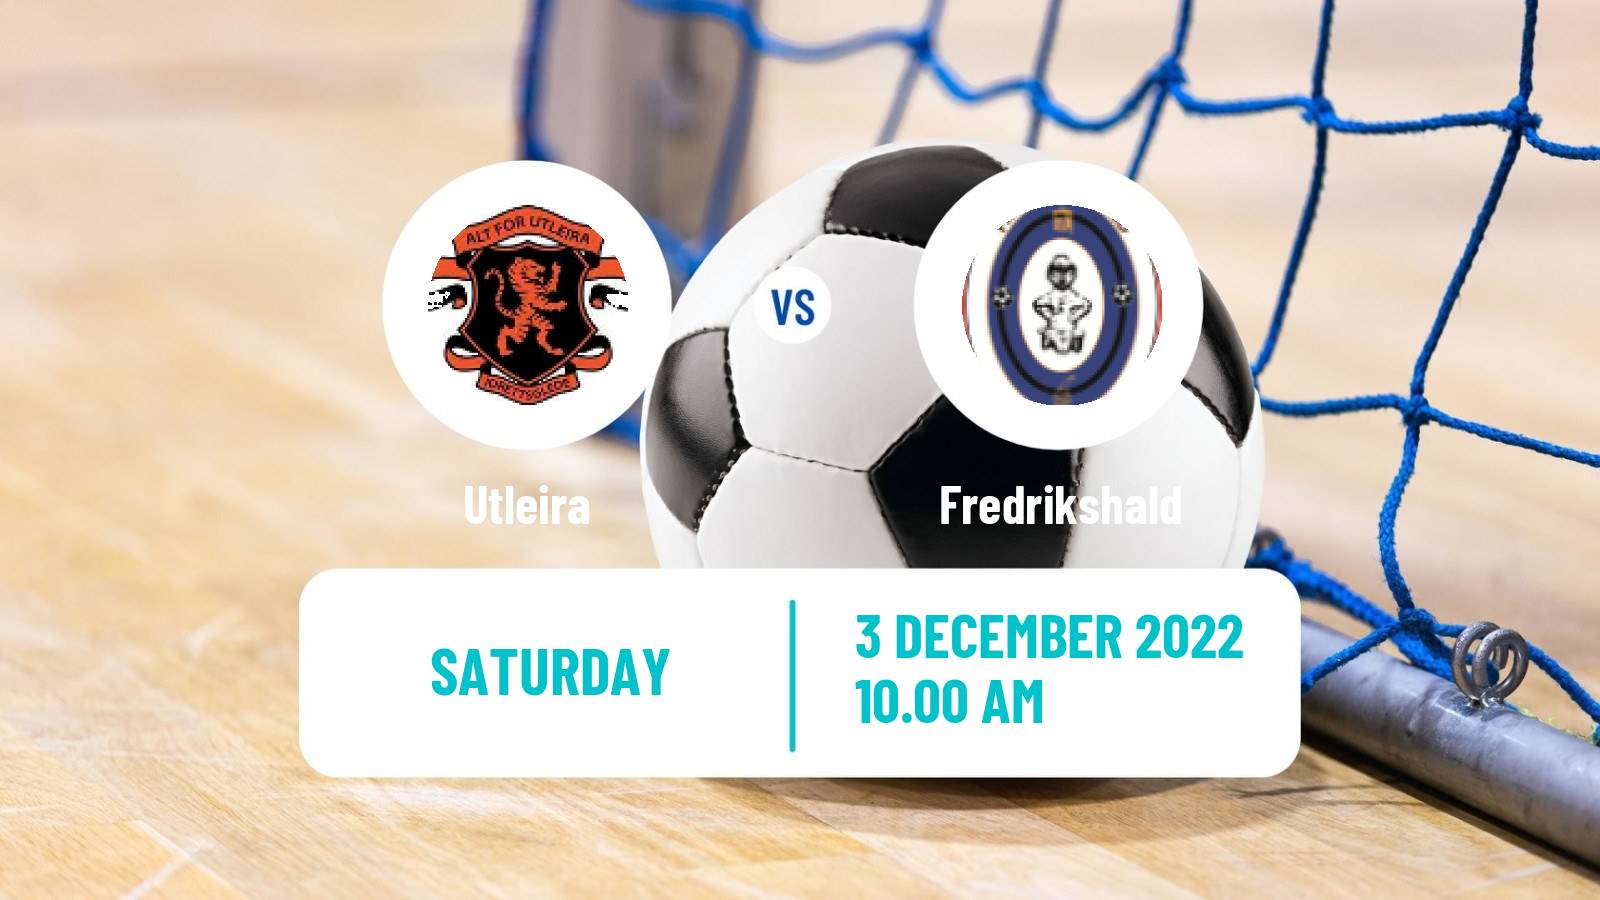 Futsal Norwegian Eliteserien Futsal Utleira - Fredrikshald